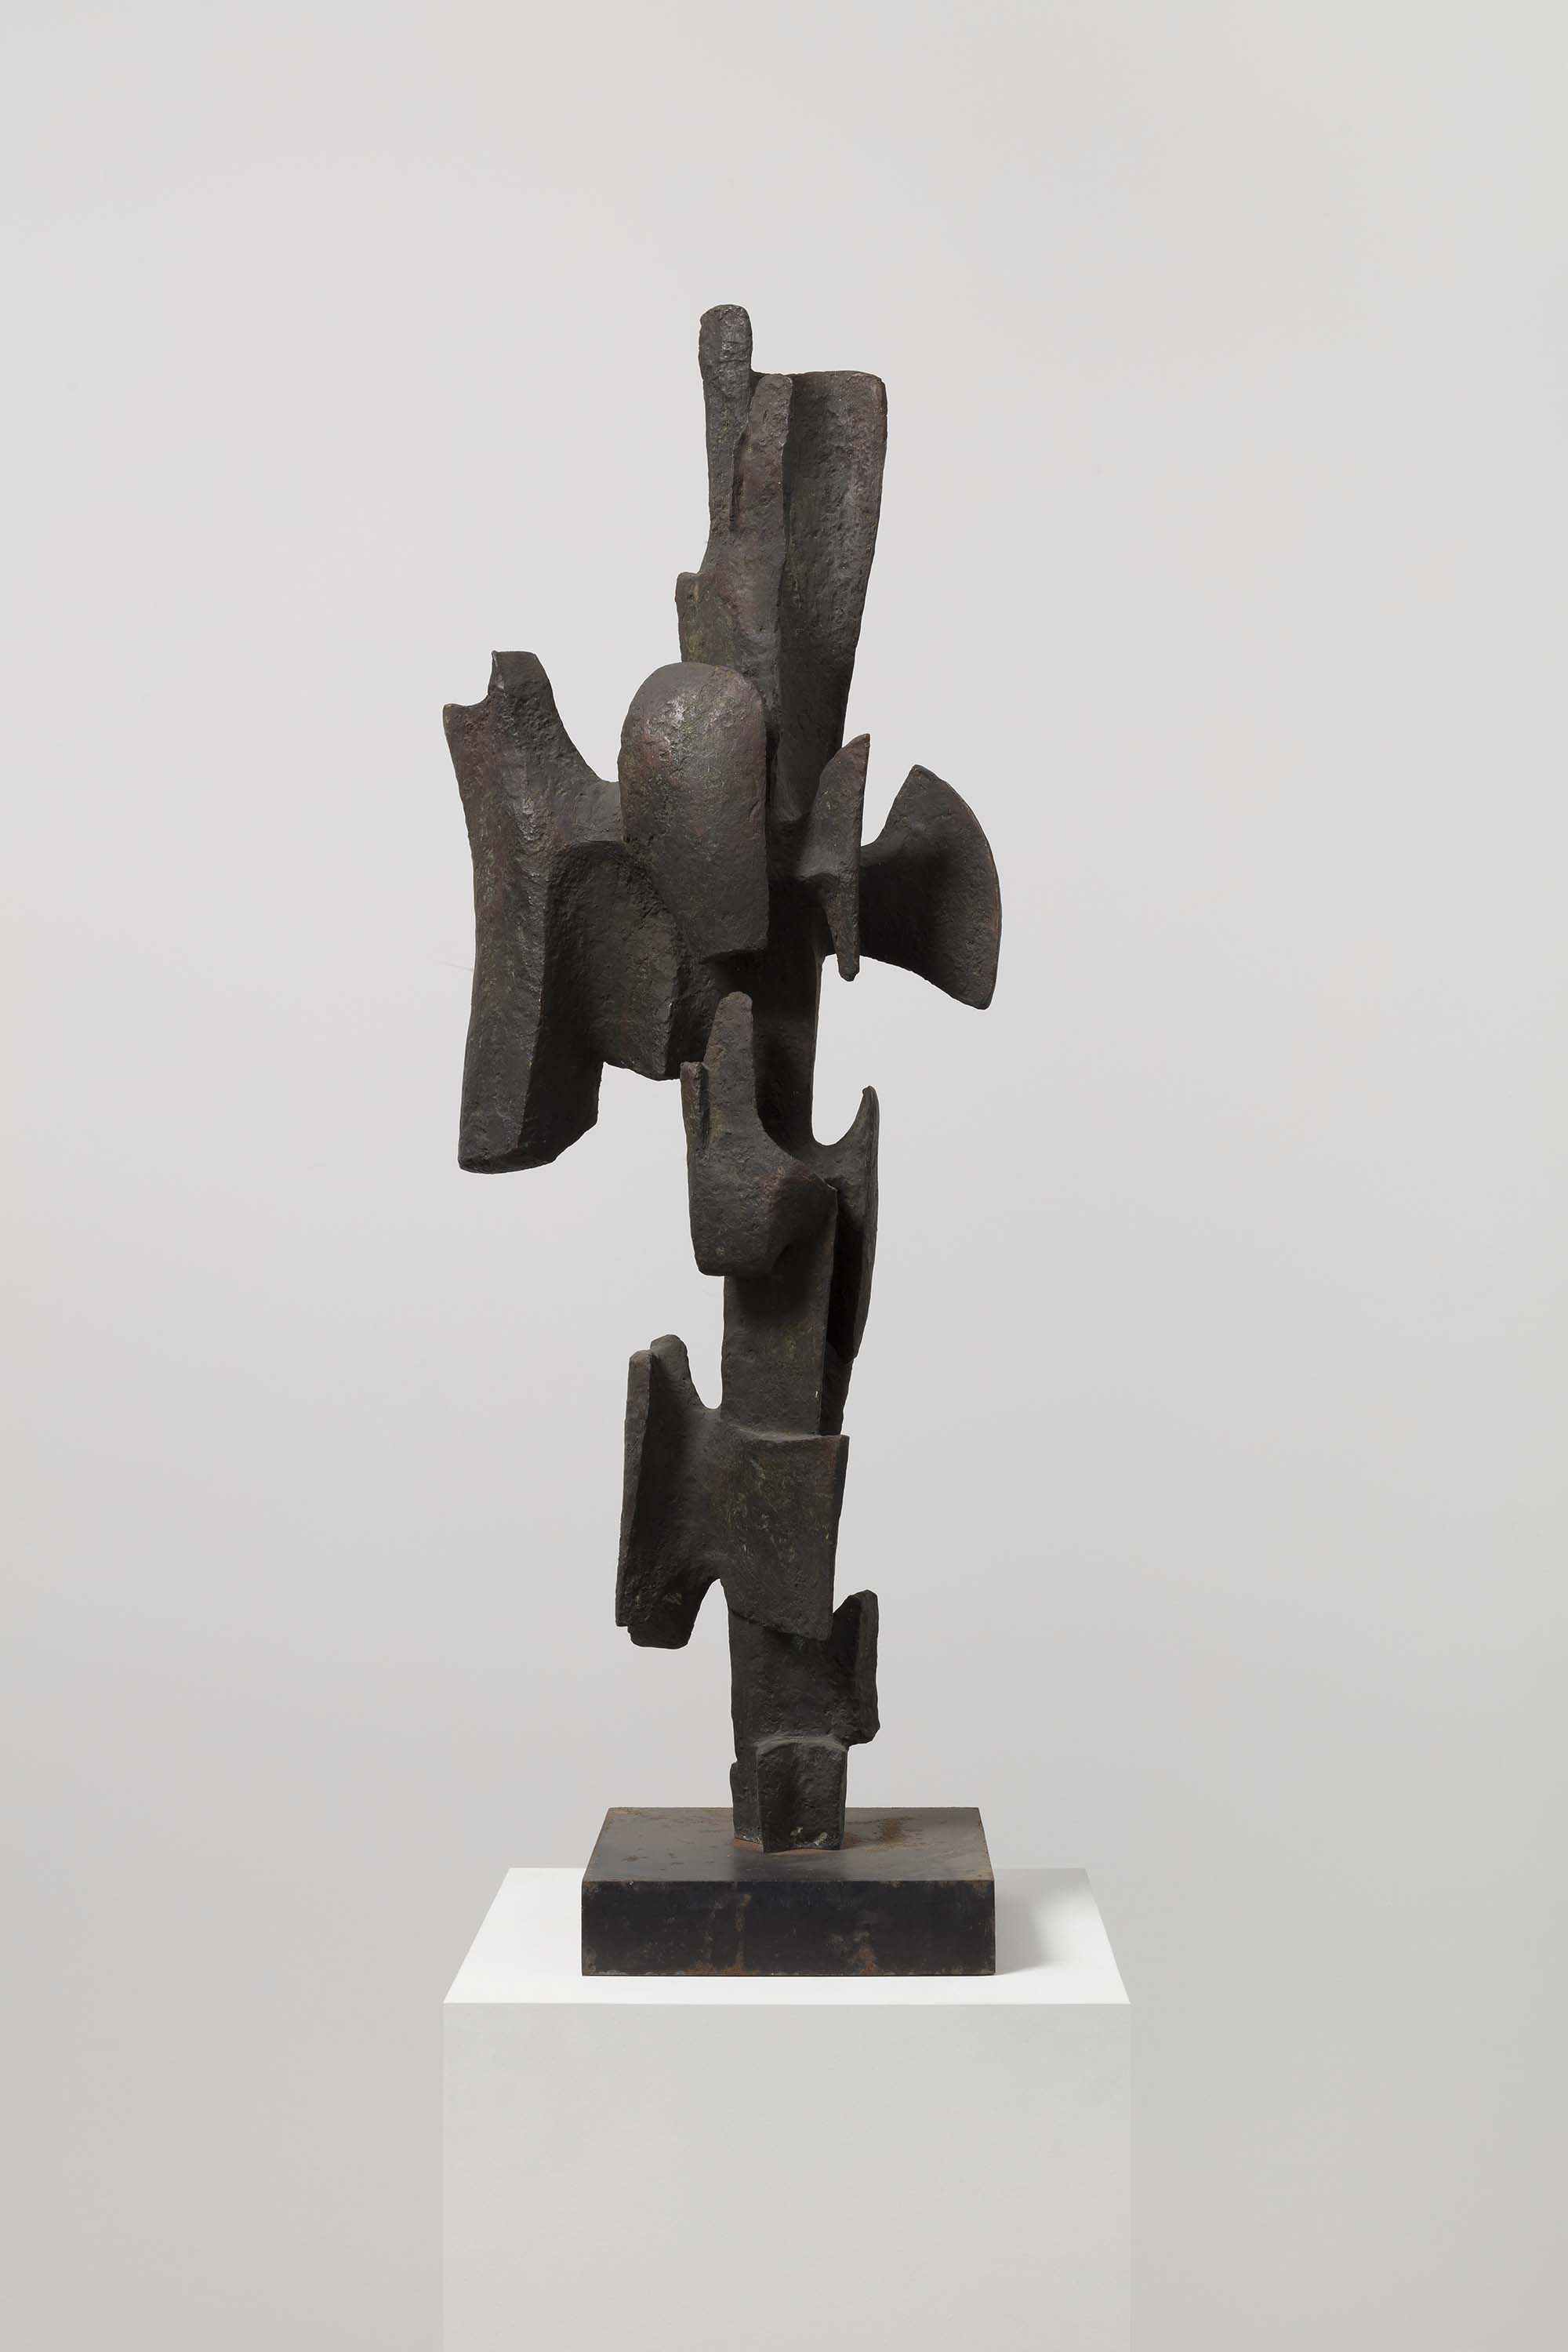 Alicia Penalba. Ombre habitée, 1960, bronze